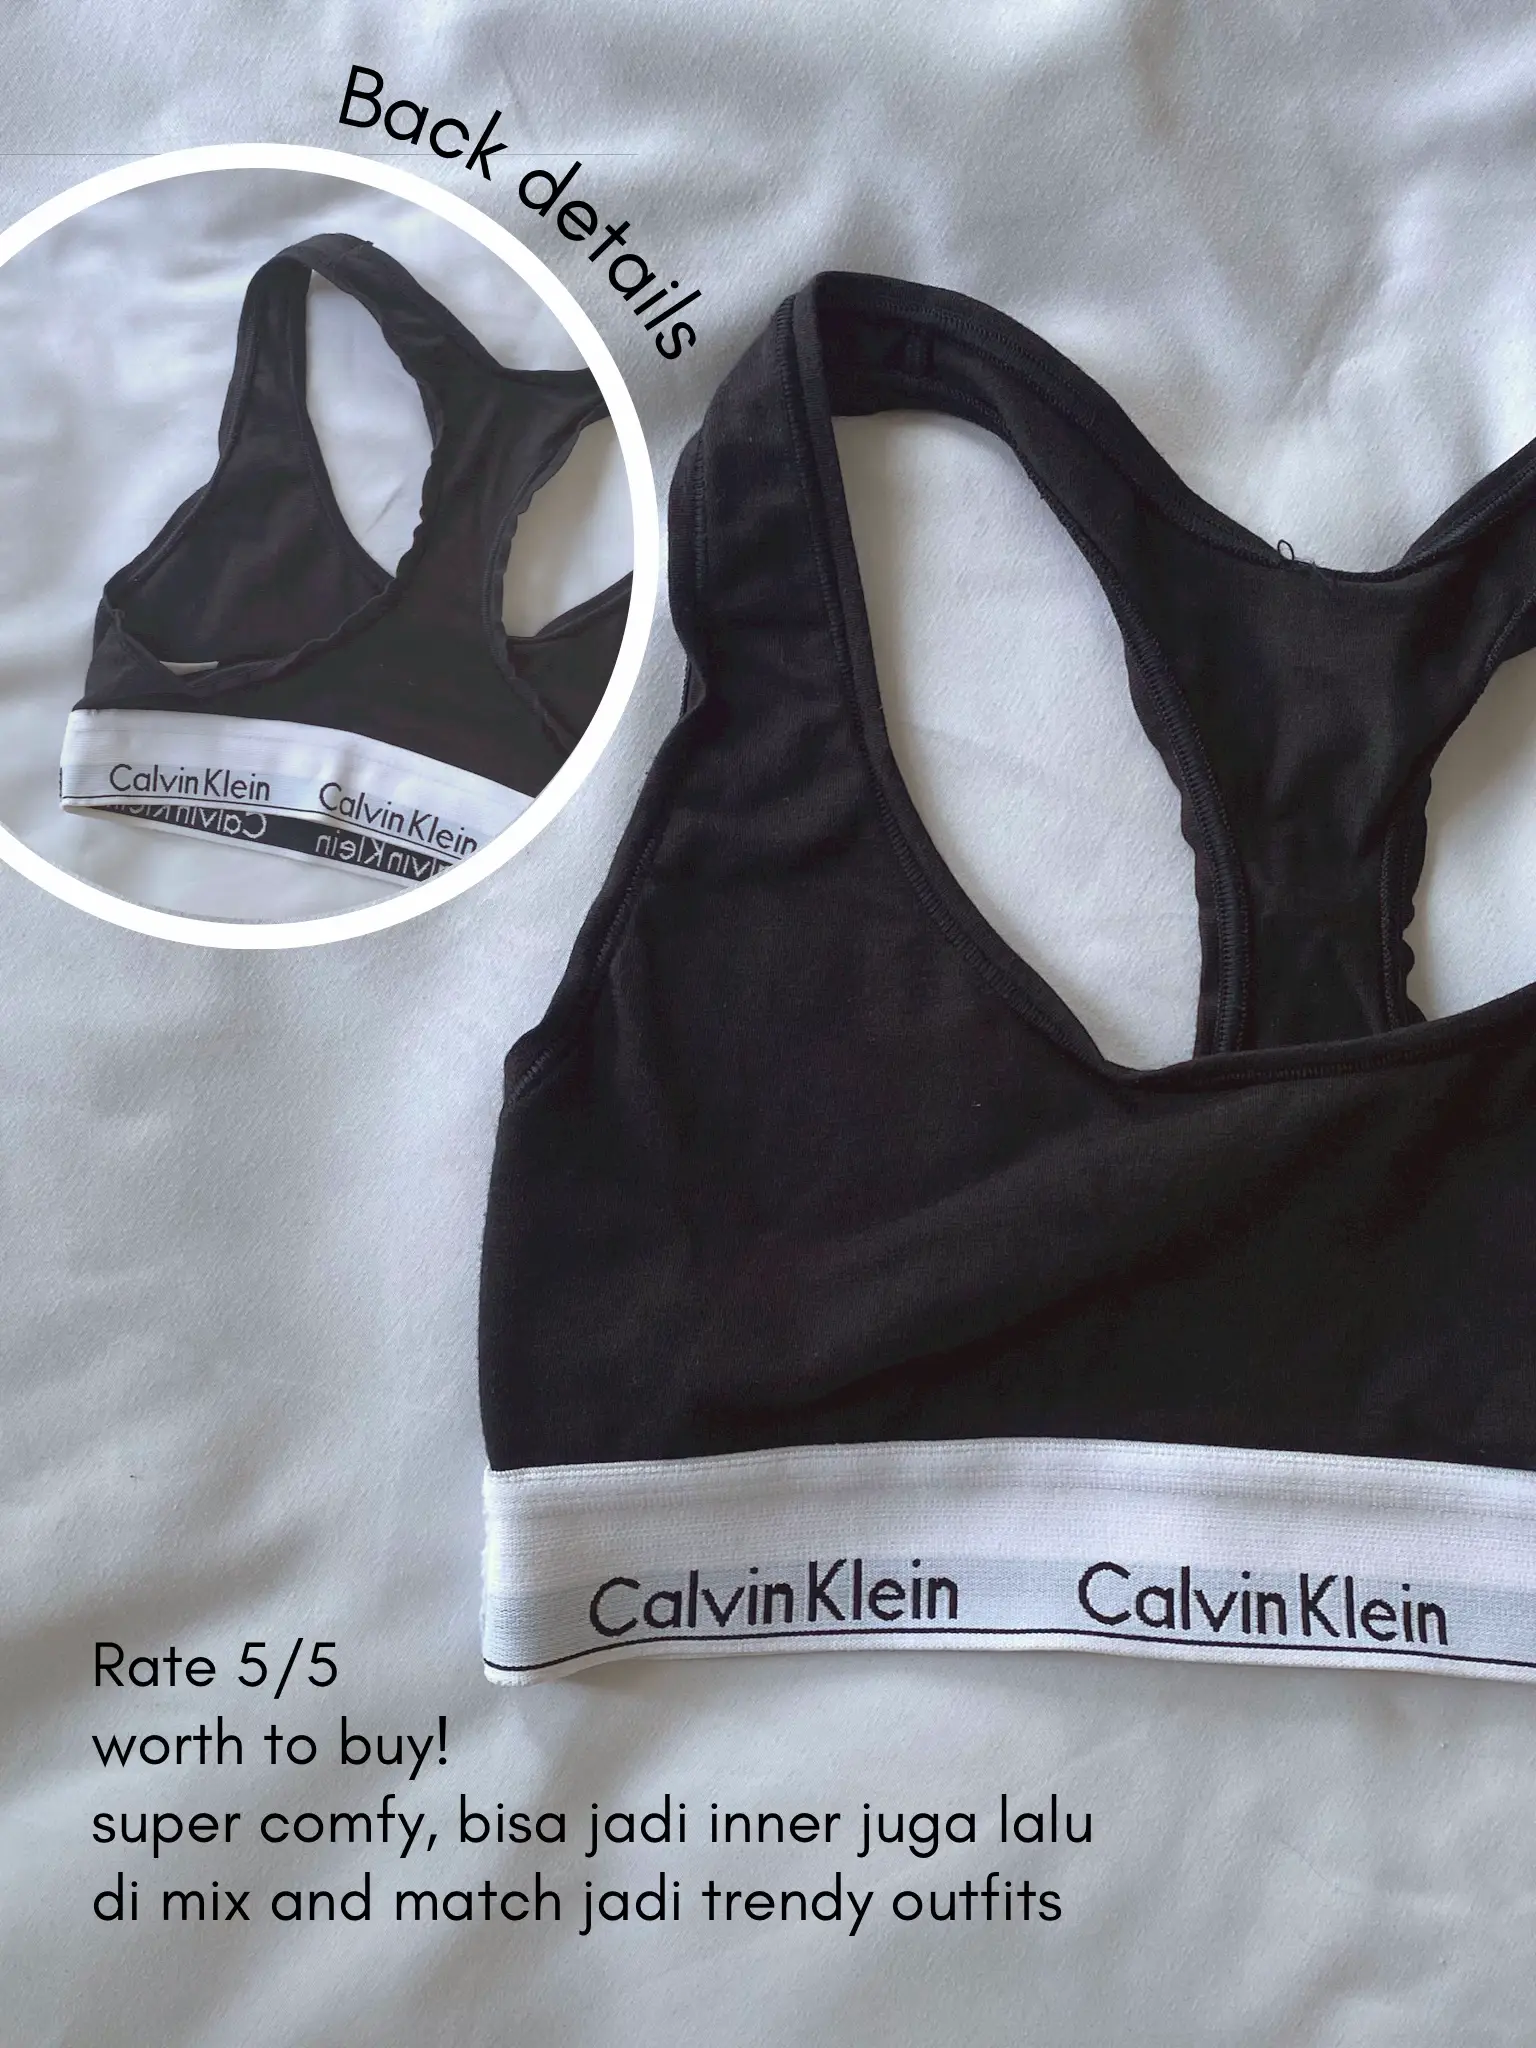 Calvin Klein Bralette Review, price, outfit inspo, Galeri diposting oleh  Sheryl louis